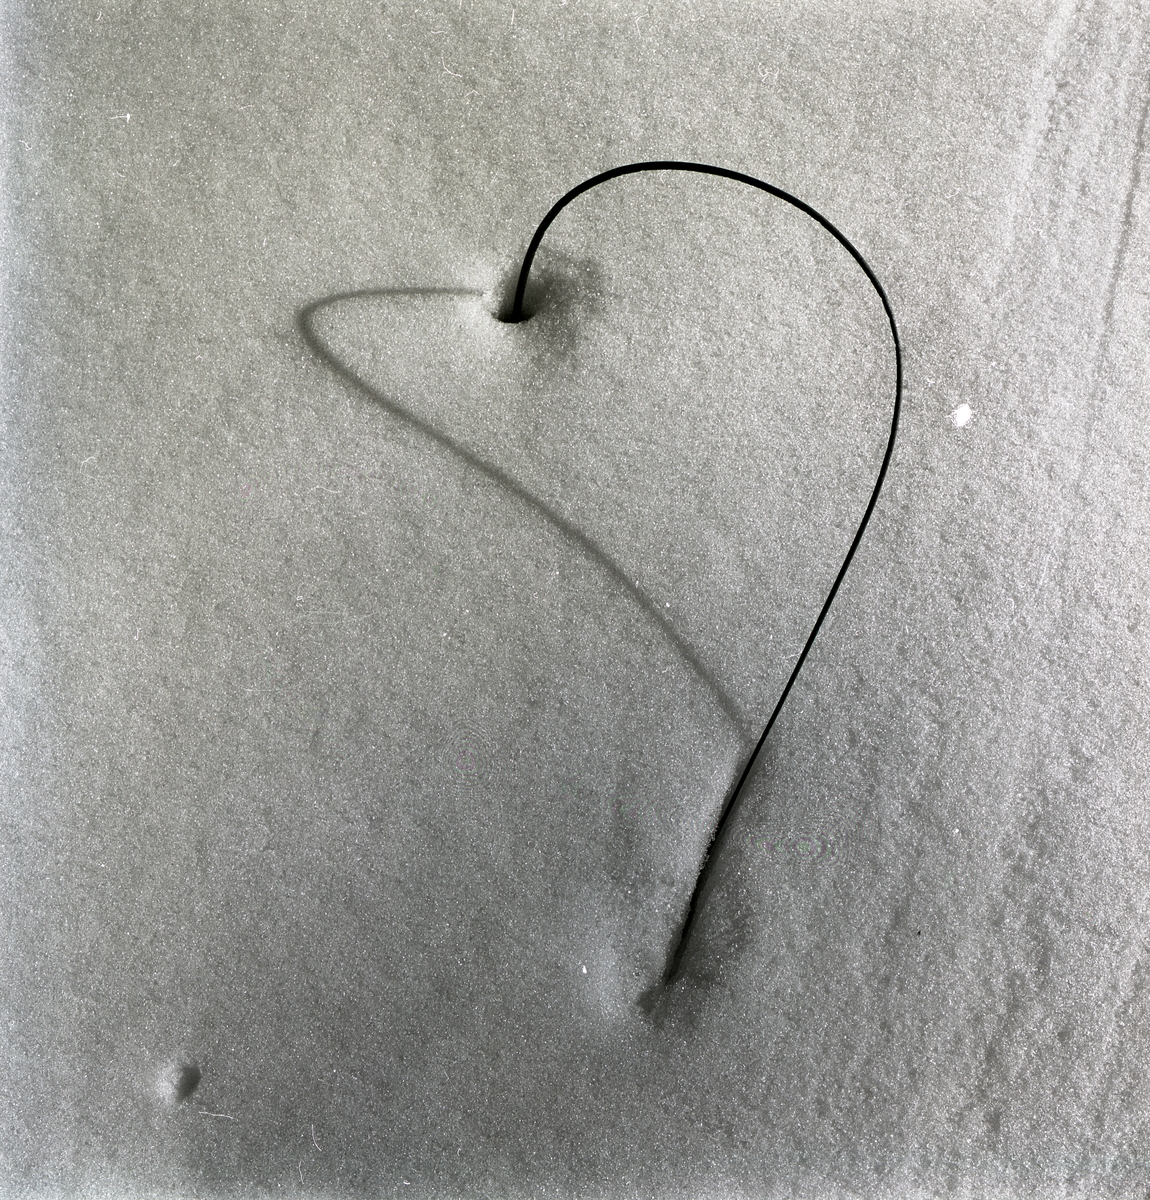 Ett grässtrå sticker upp ur snön och kastar en skugga som bildar ett hjärta intill Stråsjön, 7 april 1979.